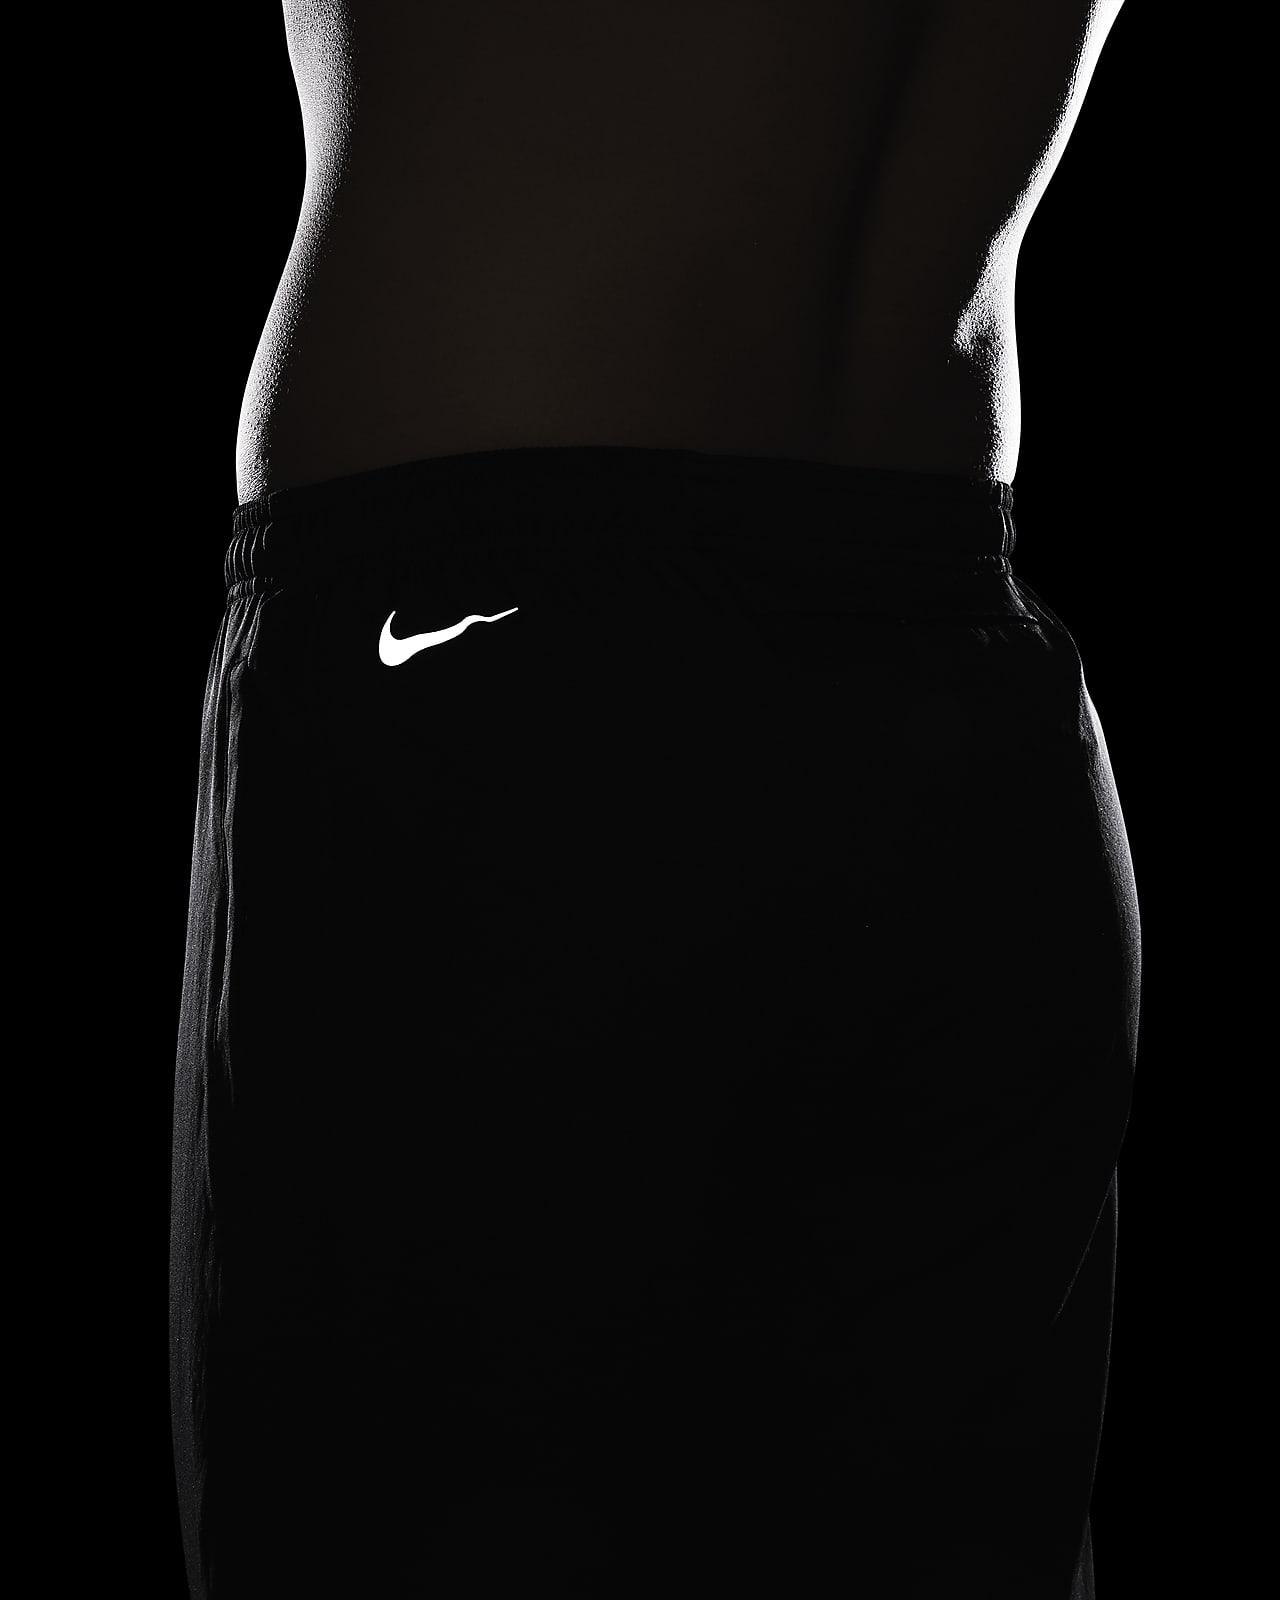 Pantalon de running tissé Nike Dri-FIT Challenger pour Homme